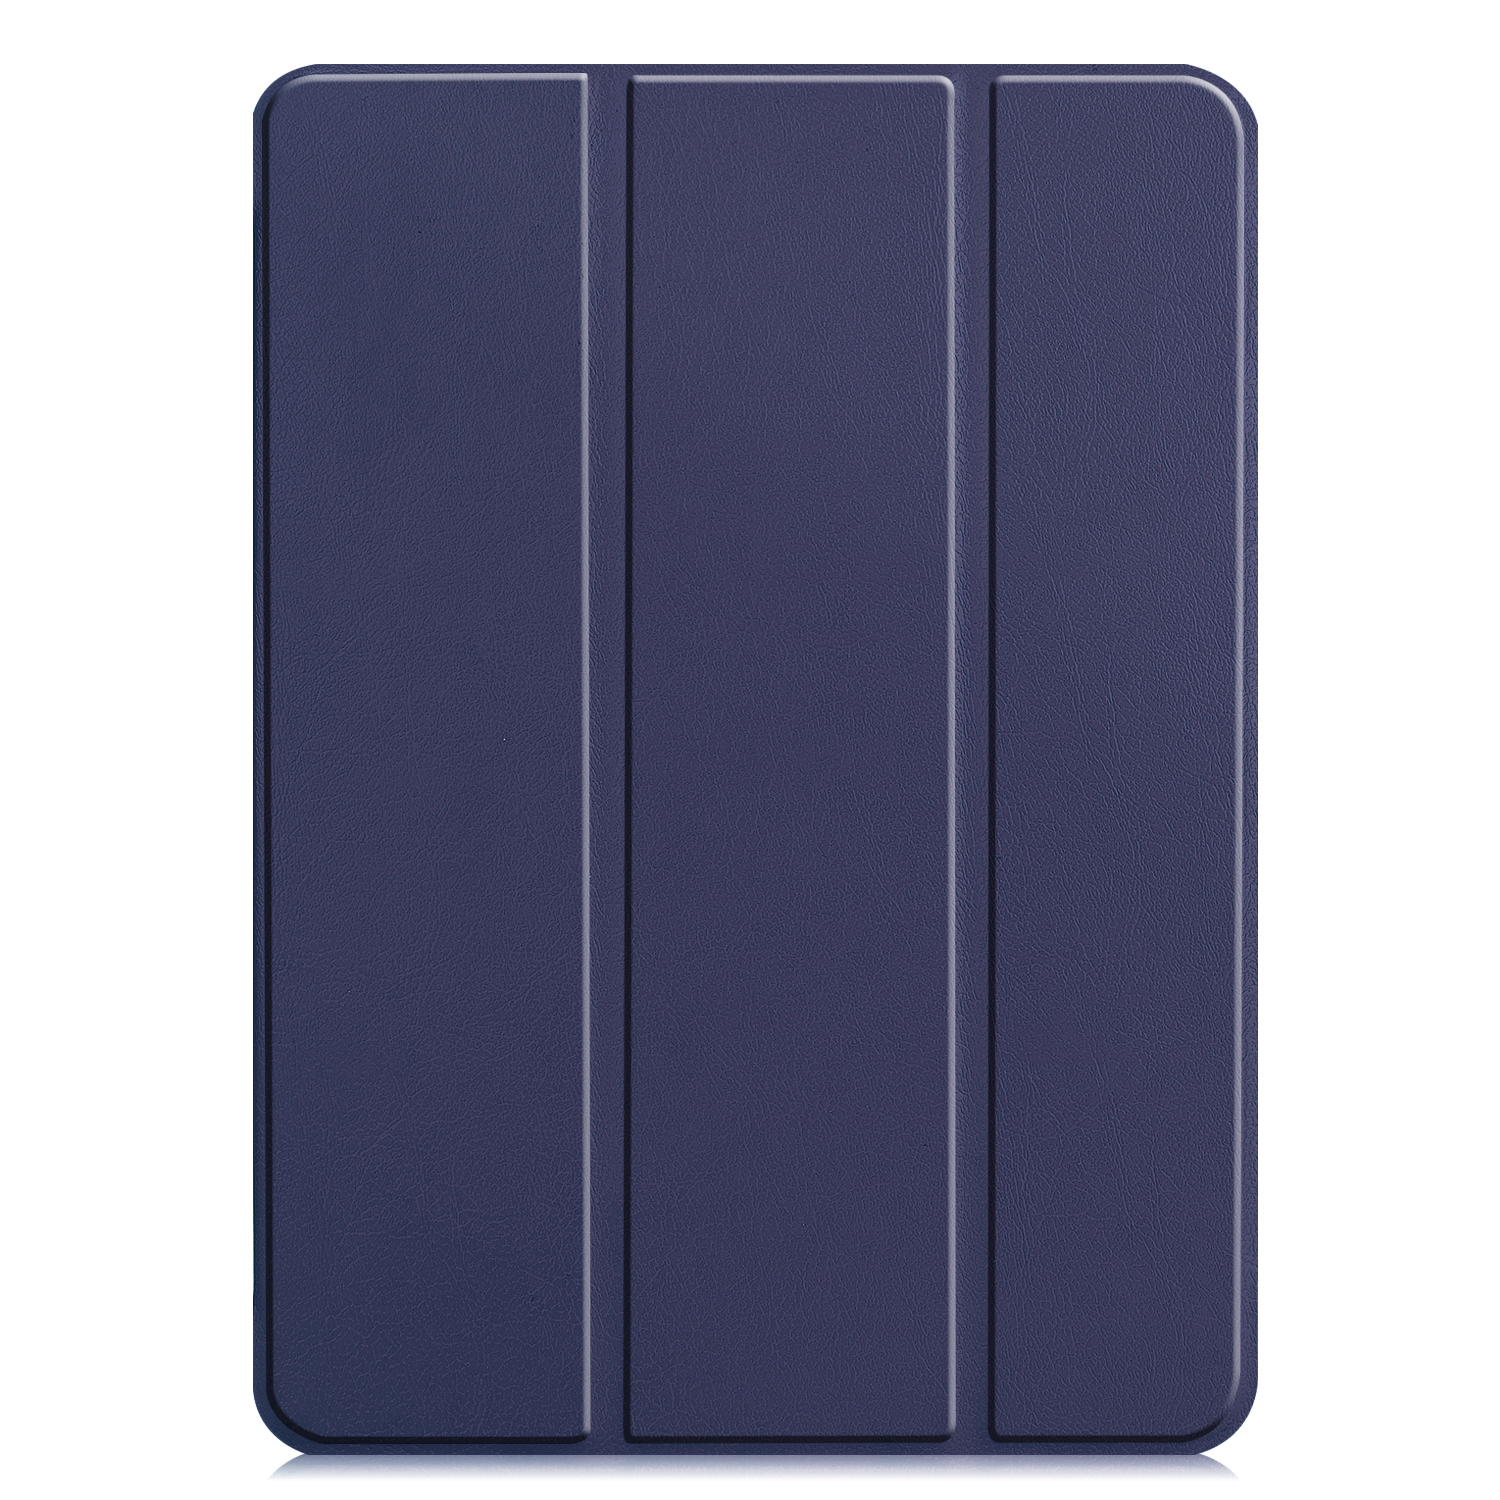 LOBWERK Hülle iPad Bookcover 12.9 12.9 Blau Apple Pro 2020 für Schutzhülle Kunstleder